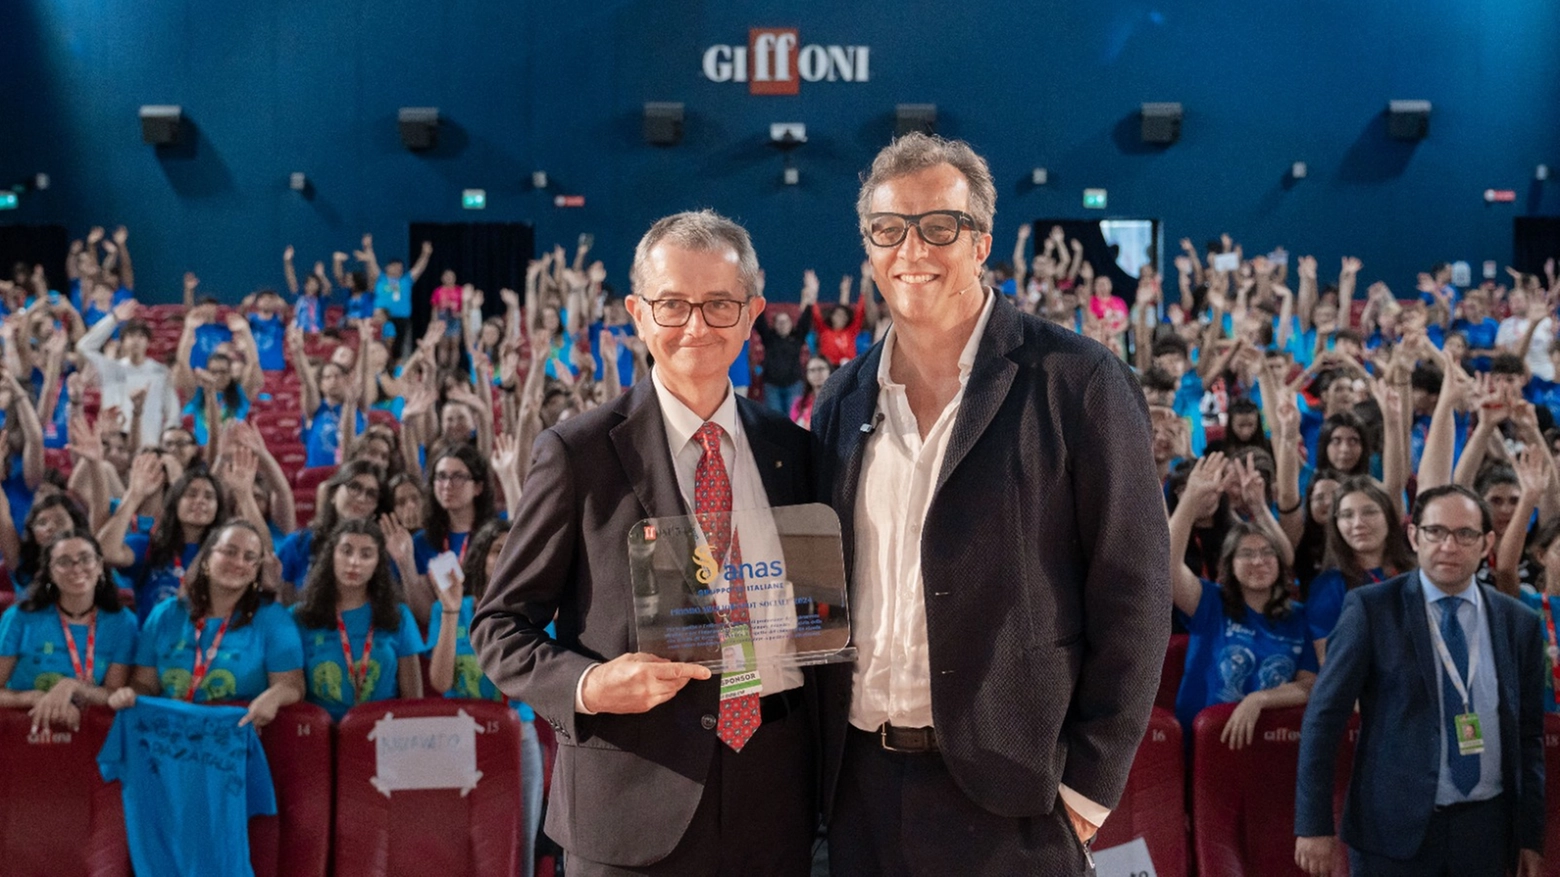 Il regista Gabriele Muccino ha premiato Anas al Giffoni Film Festival